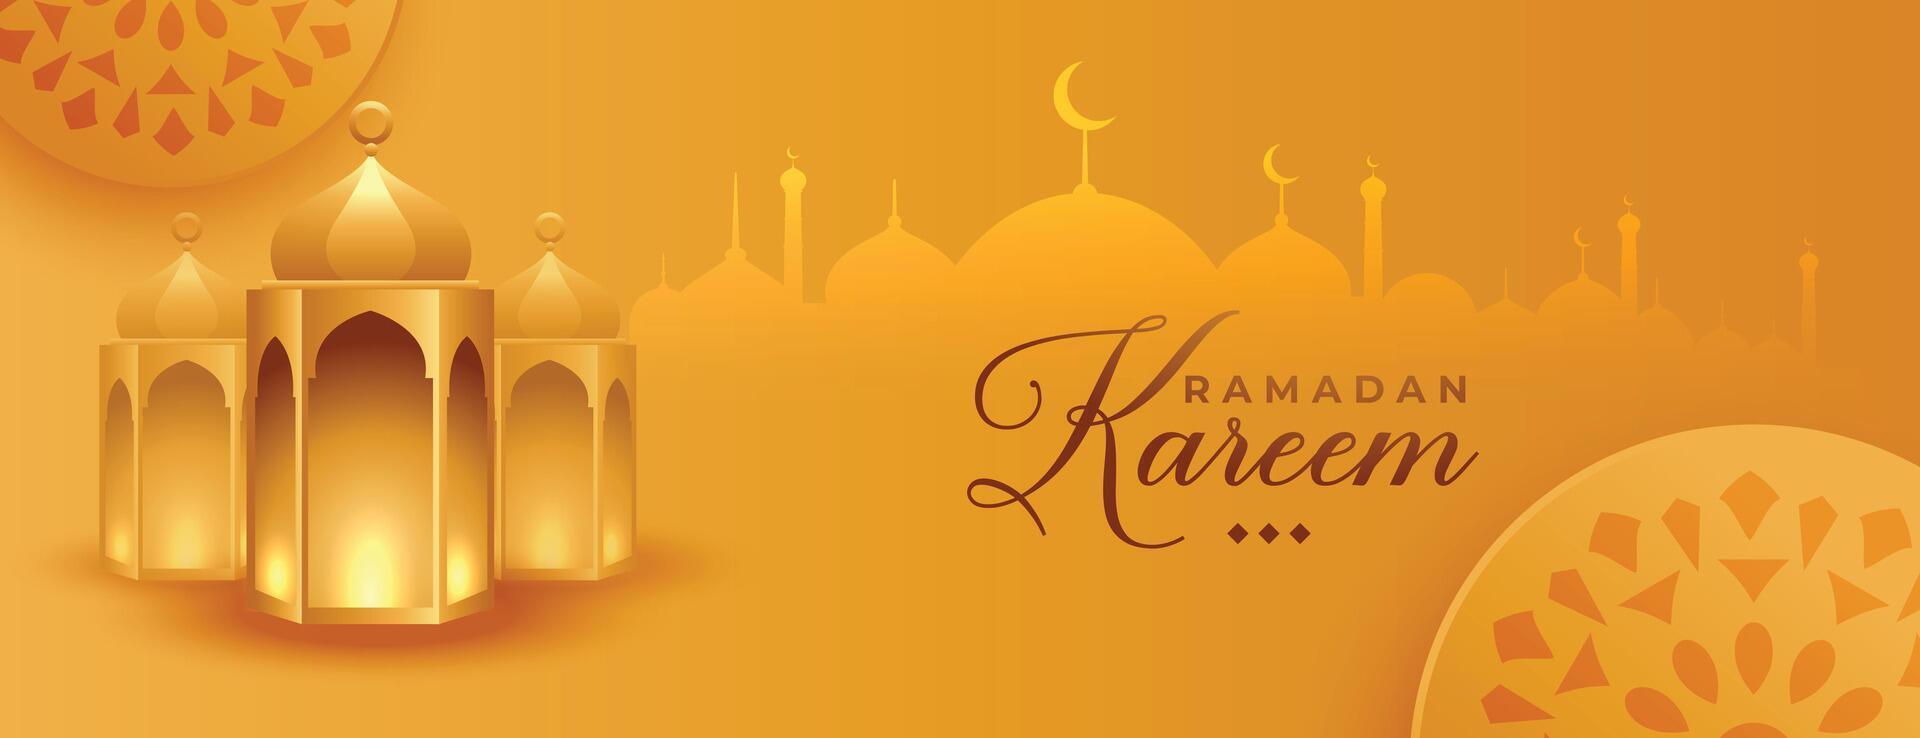 ramadan kareem islamic golden banner design vector